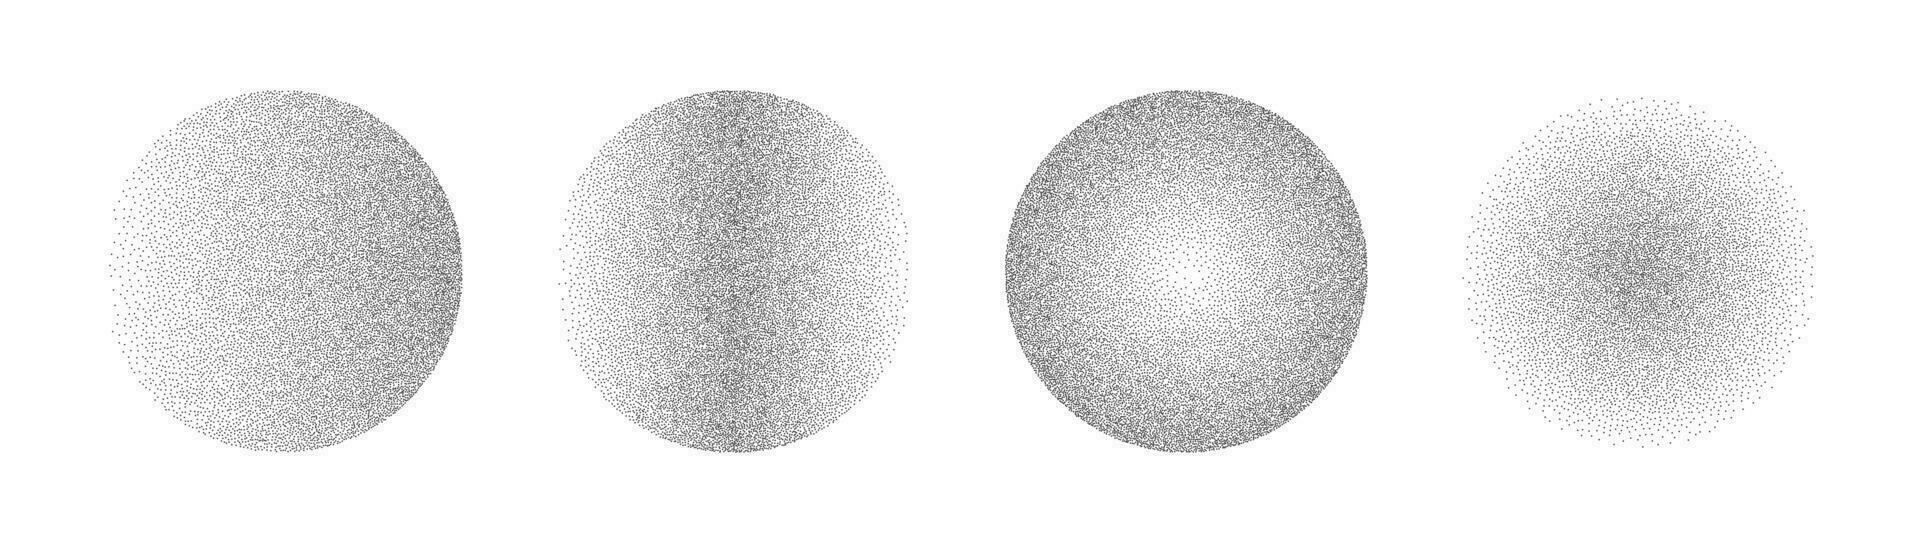 gradiente ruído círculos fez do grãos e pontos. meio-tom volta padronizar elementos com gradação a partir de Sombrio para claro. vetor isolado ilustração em branco fundo.